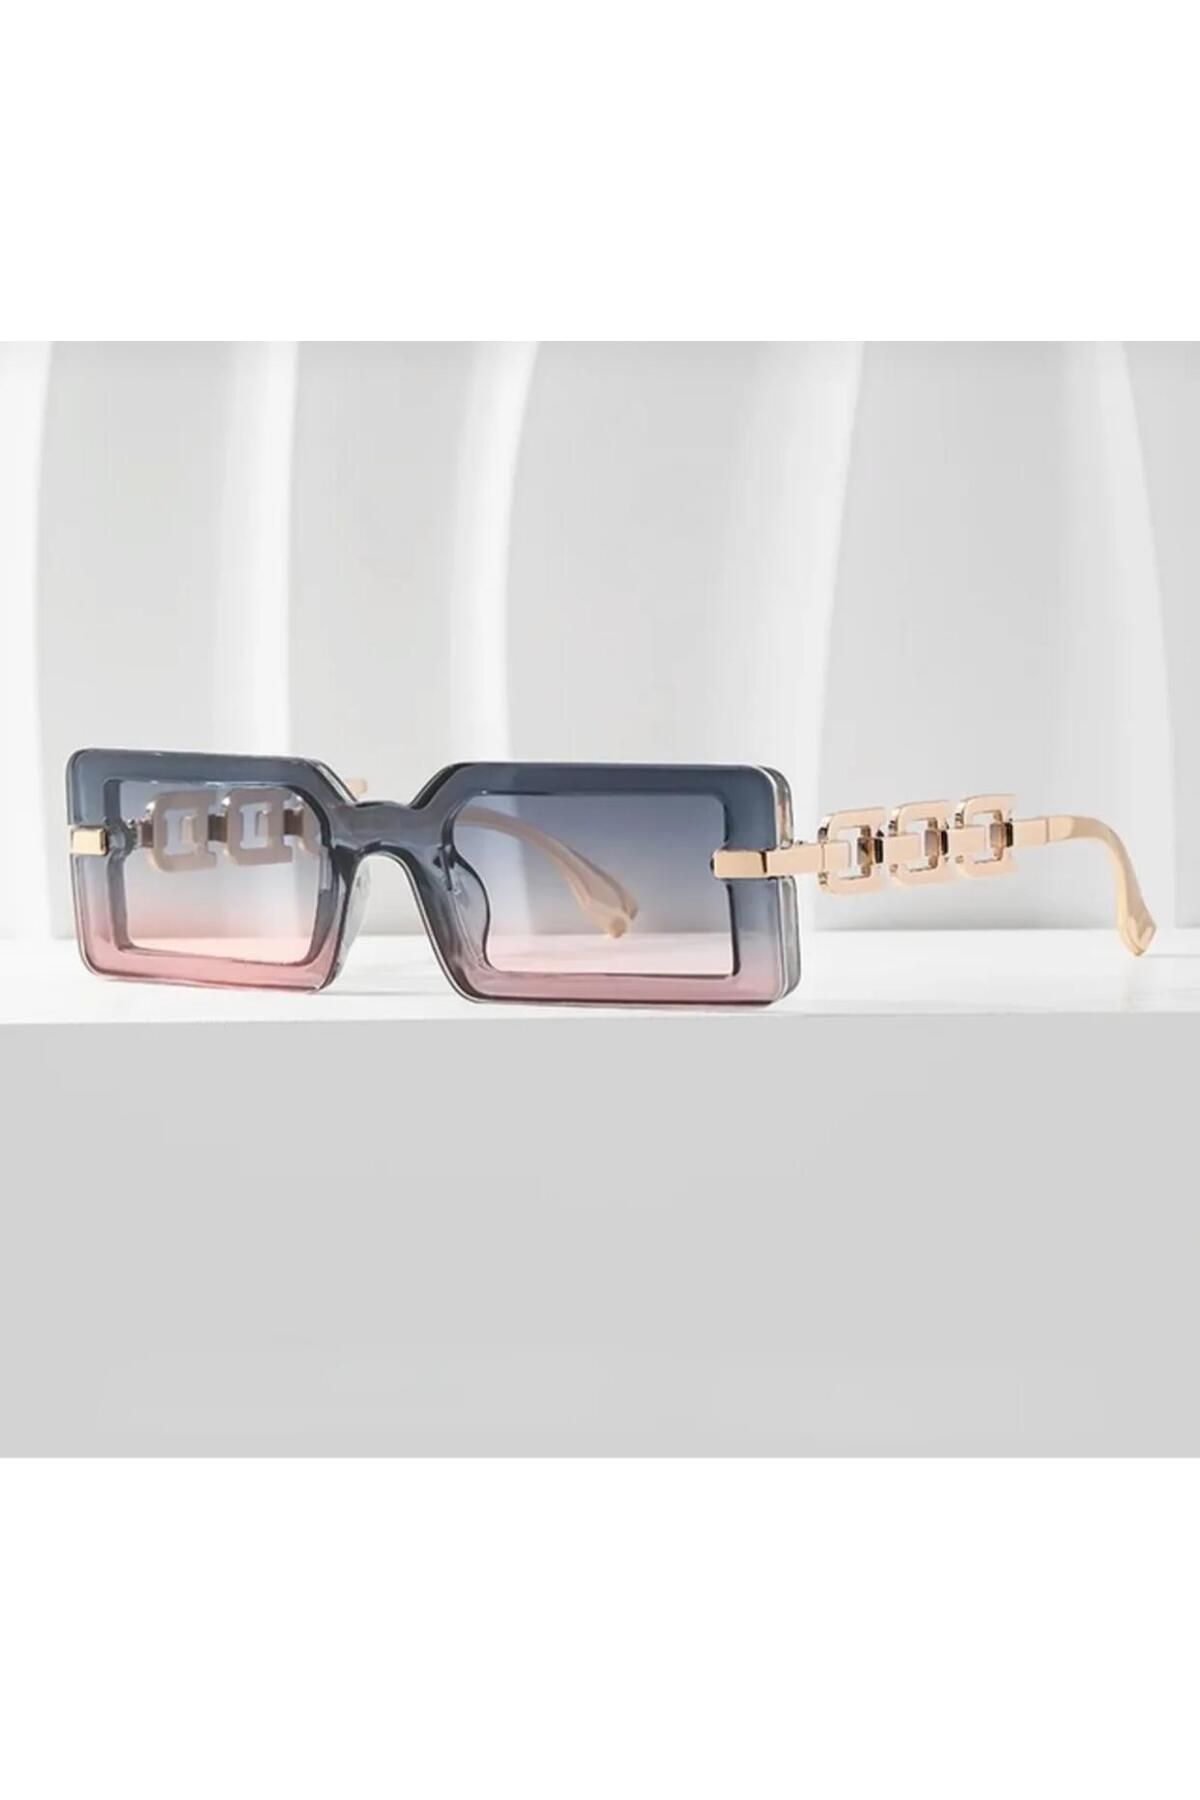 AVİPOLES güneş gözlüğü lüx ürün uv 400 şık tasarım güneş gözlüğü